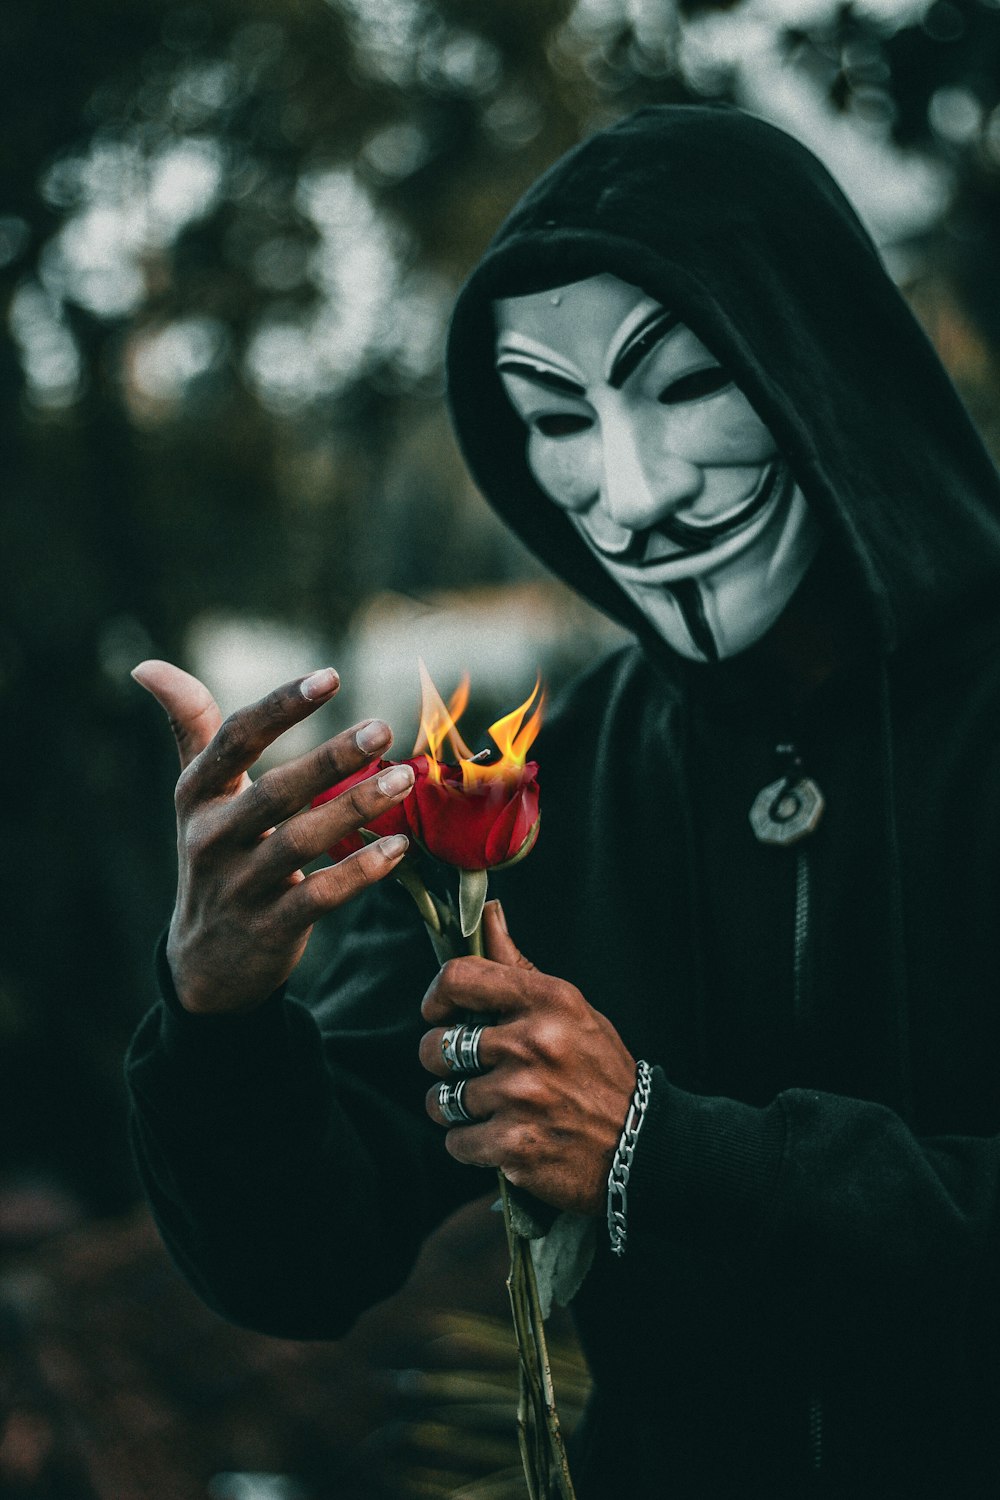 Más de 30,000 imágenes de máscaras de Vendetta | Descargar imágenes gratis  en Unsplash